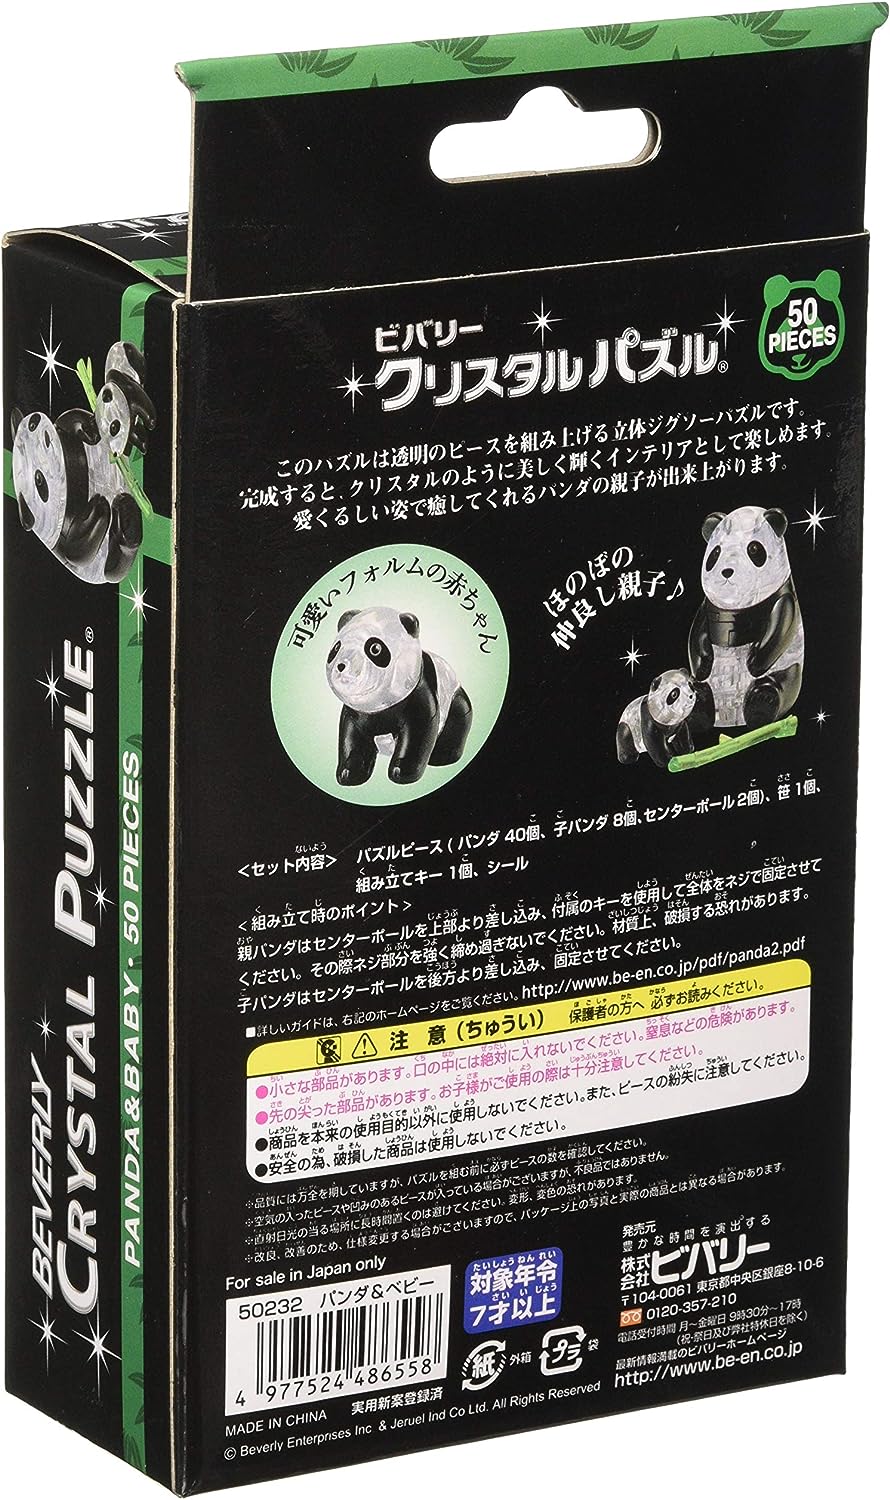 Beverly 50232 Crystal Puzzle Panda & Baby - BanzaiHobby